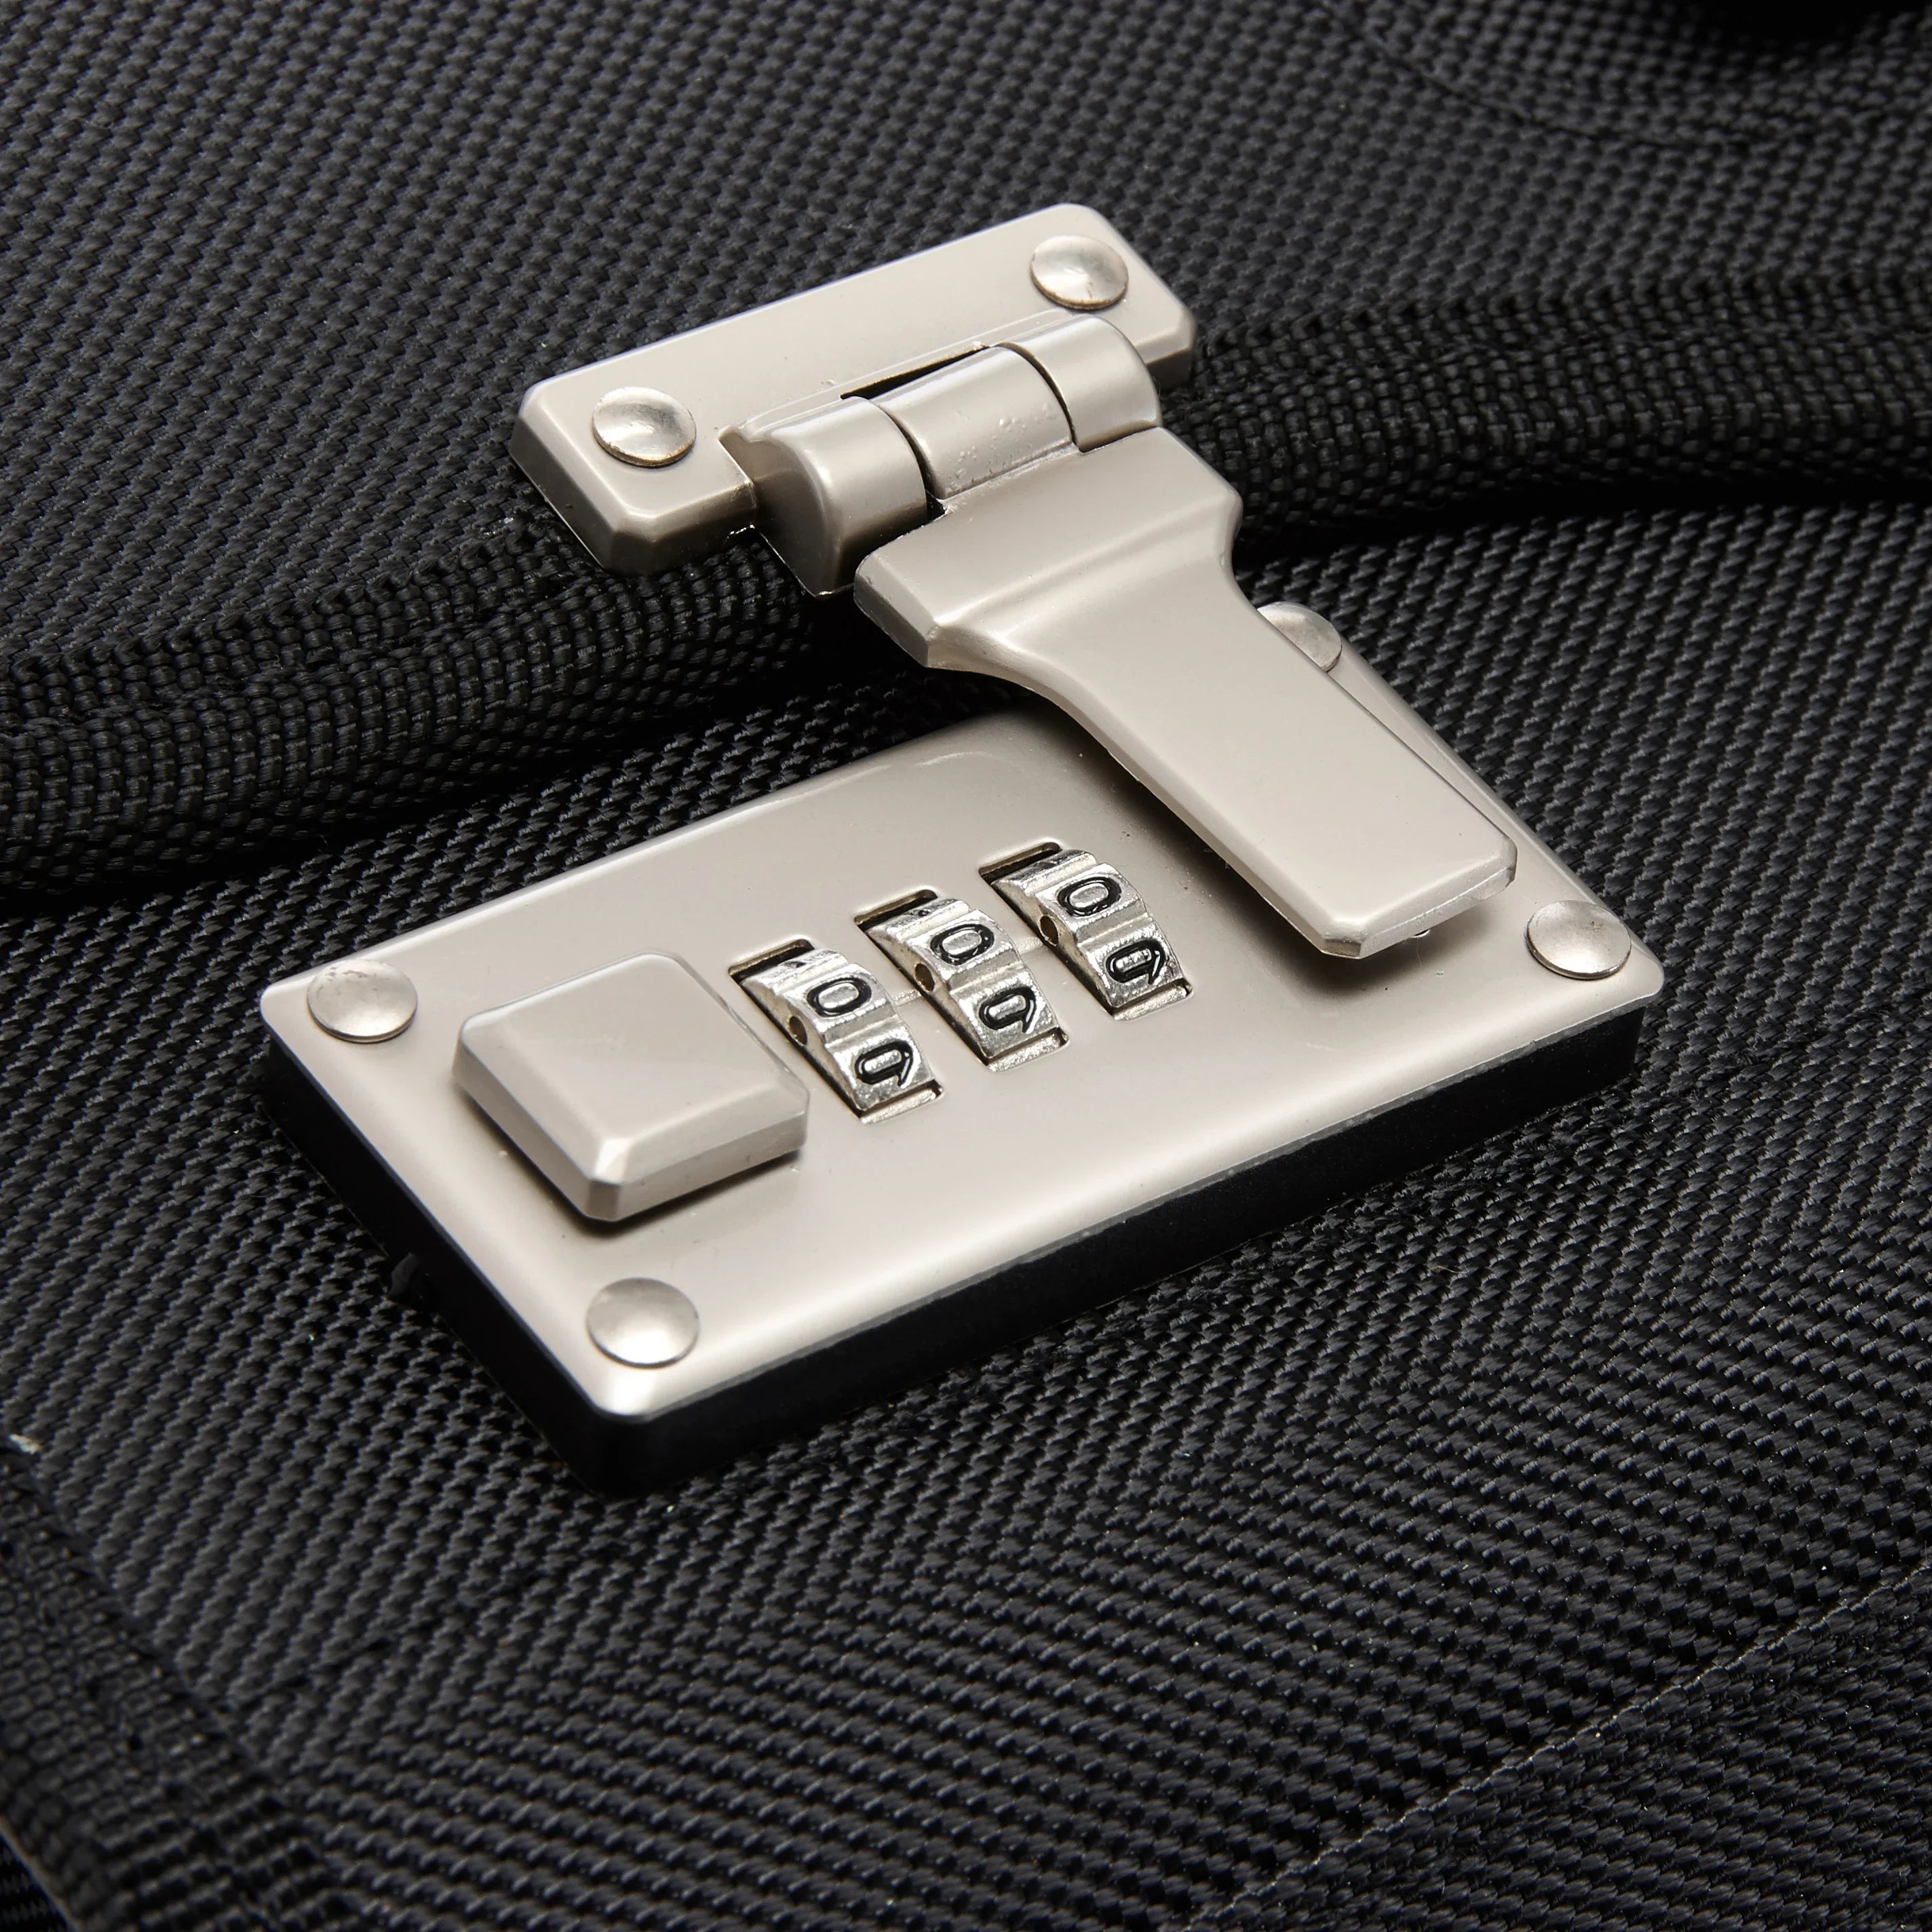 d&amp;n Business &amp; Travel valise pilote à roulettes 46 cm - noir